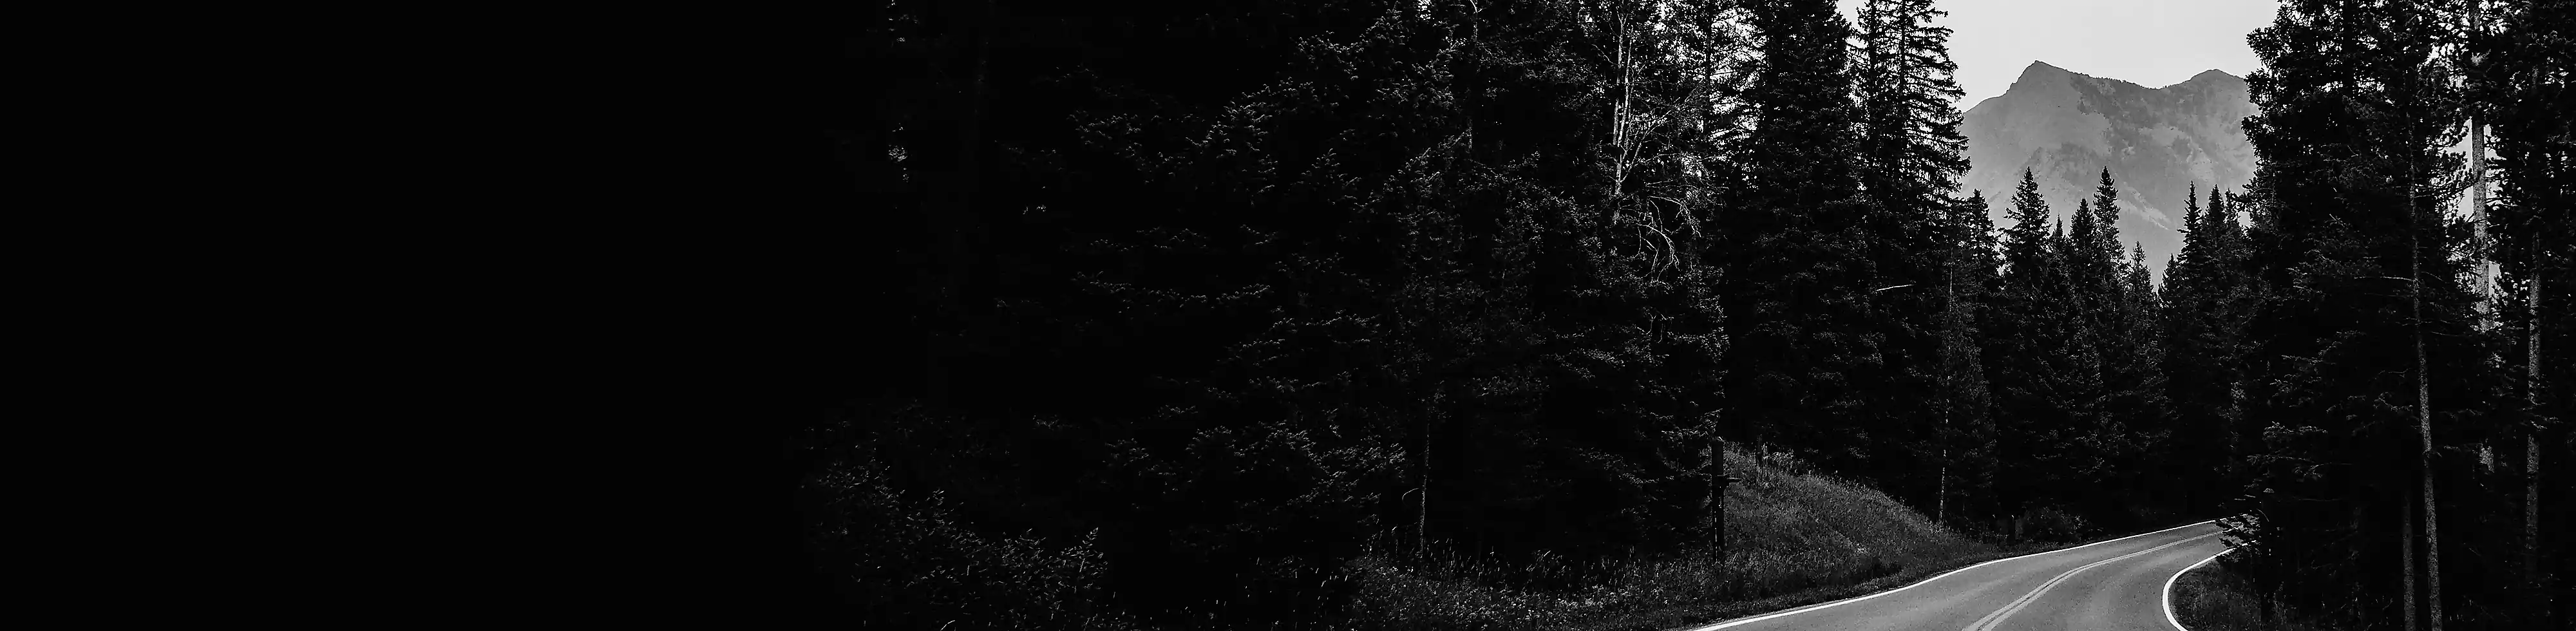 O șosea cu două benzi printr-o pădure, cu un vârf de munte în fundal, imagine alb-negru.